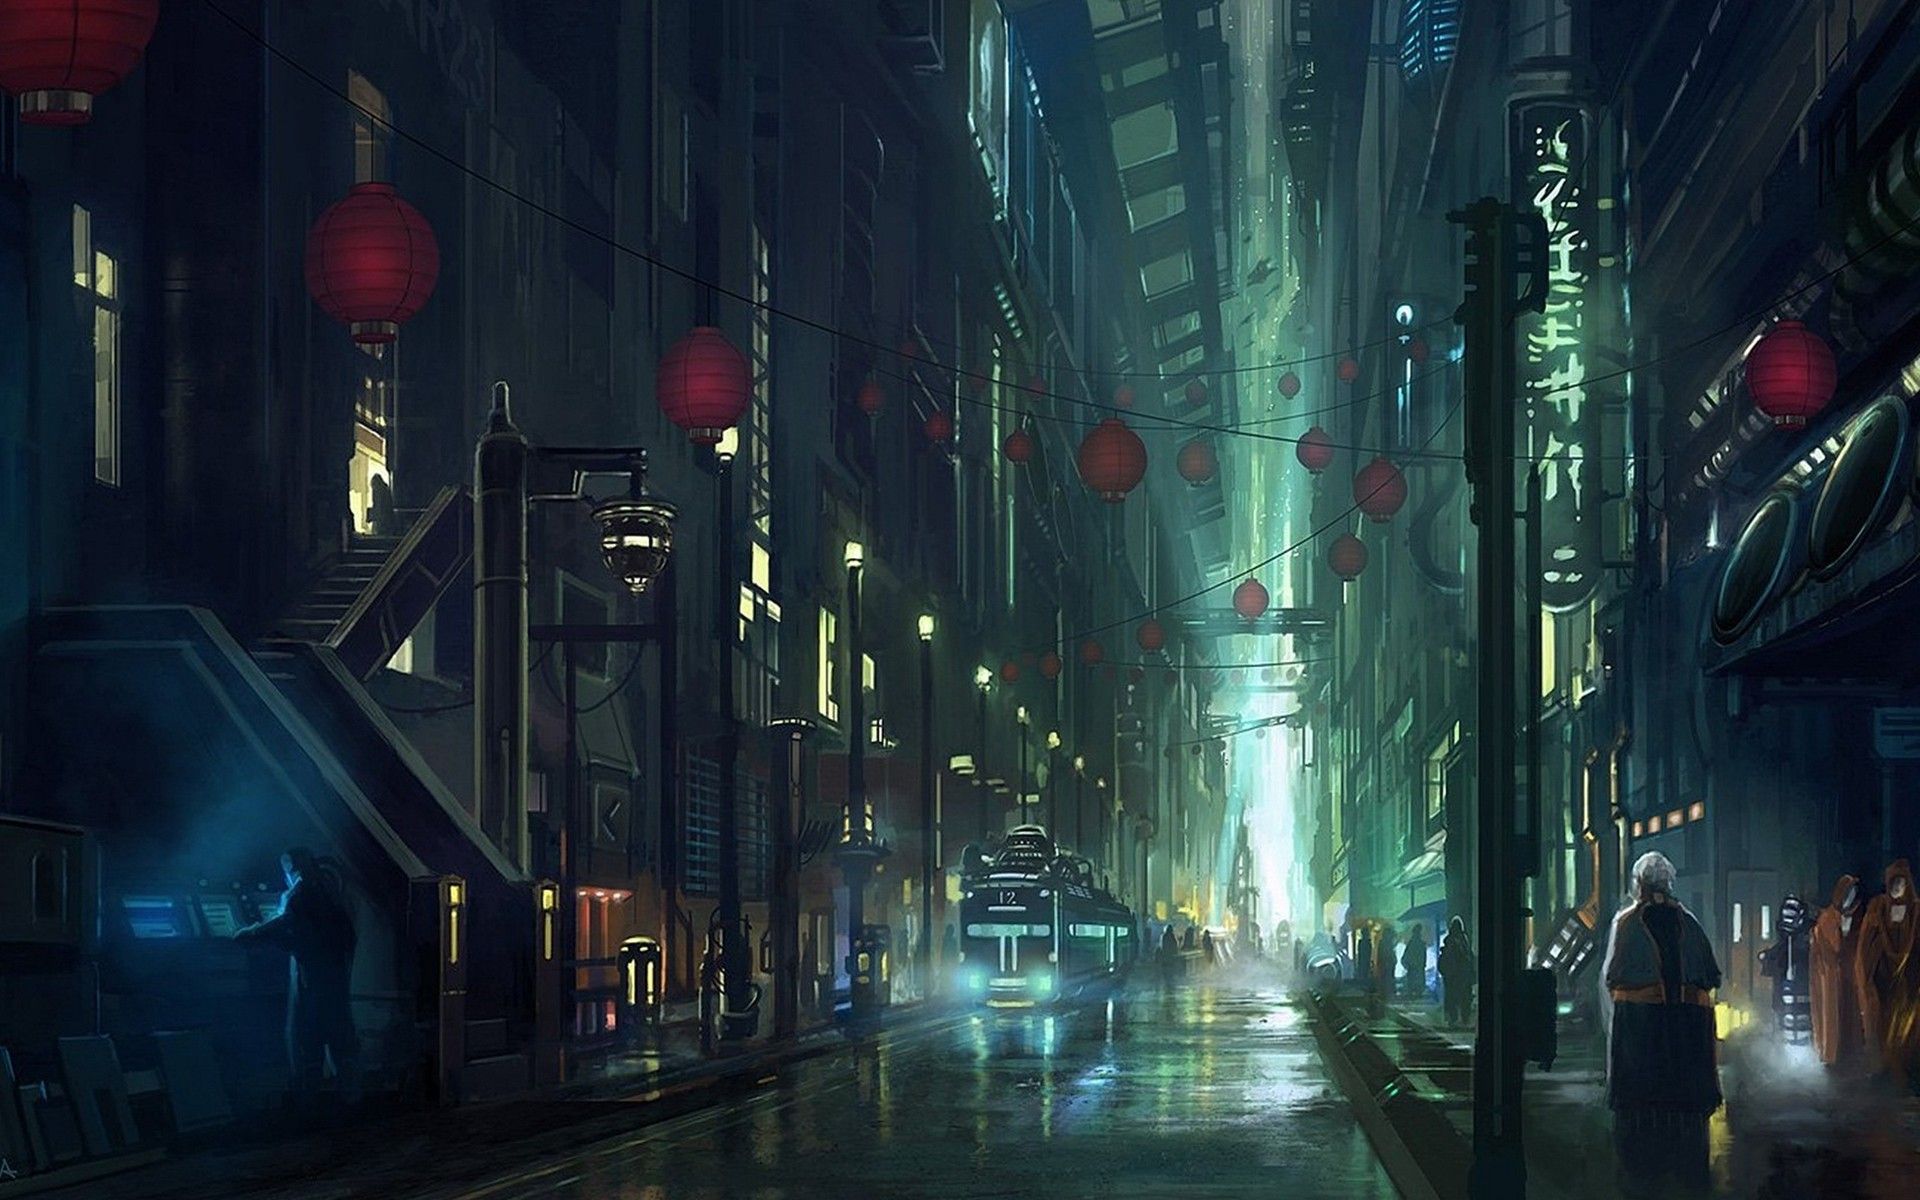 Níu chân bạn trong những hình nền đường phố anime đầy màu sắc và hấp dẫn. Bộ sưu tập này sẽ khiến bạn ngỡ ngàng với đường phố được tạo hình cực kỳ sáng tạo. Hãy trang trí cho màn hình của bạn với các hình nền độc đáo và tạo cho mình một không gian mới lạ.